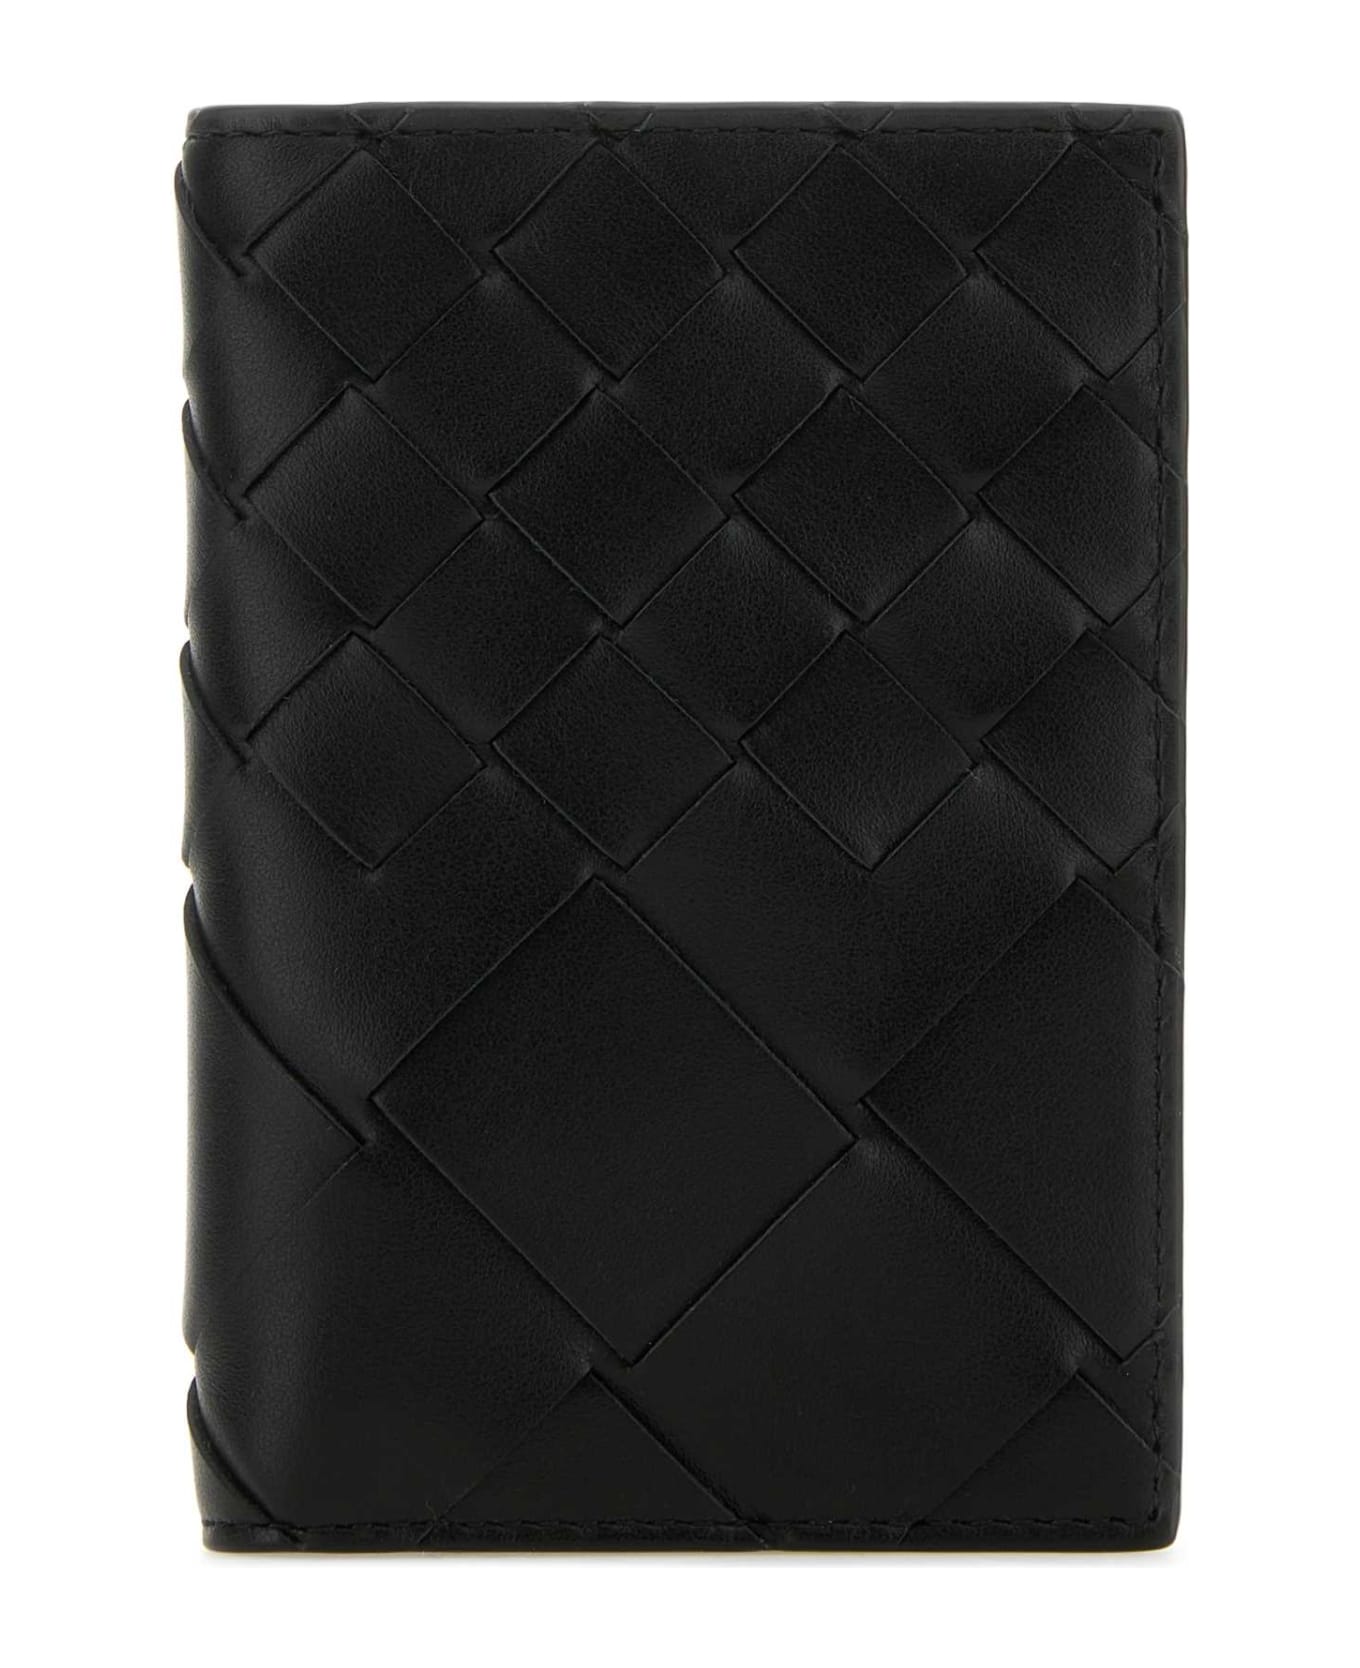 Bottega Veneta Black Leather Intrecciato Card Holder - BLK